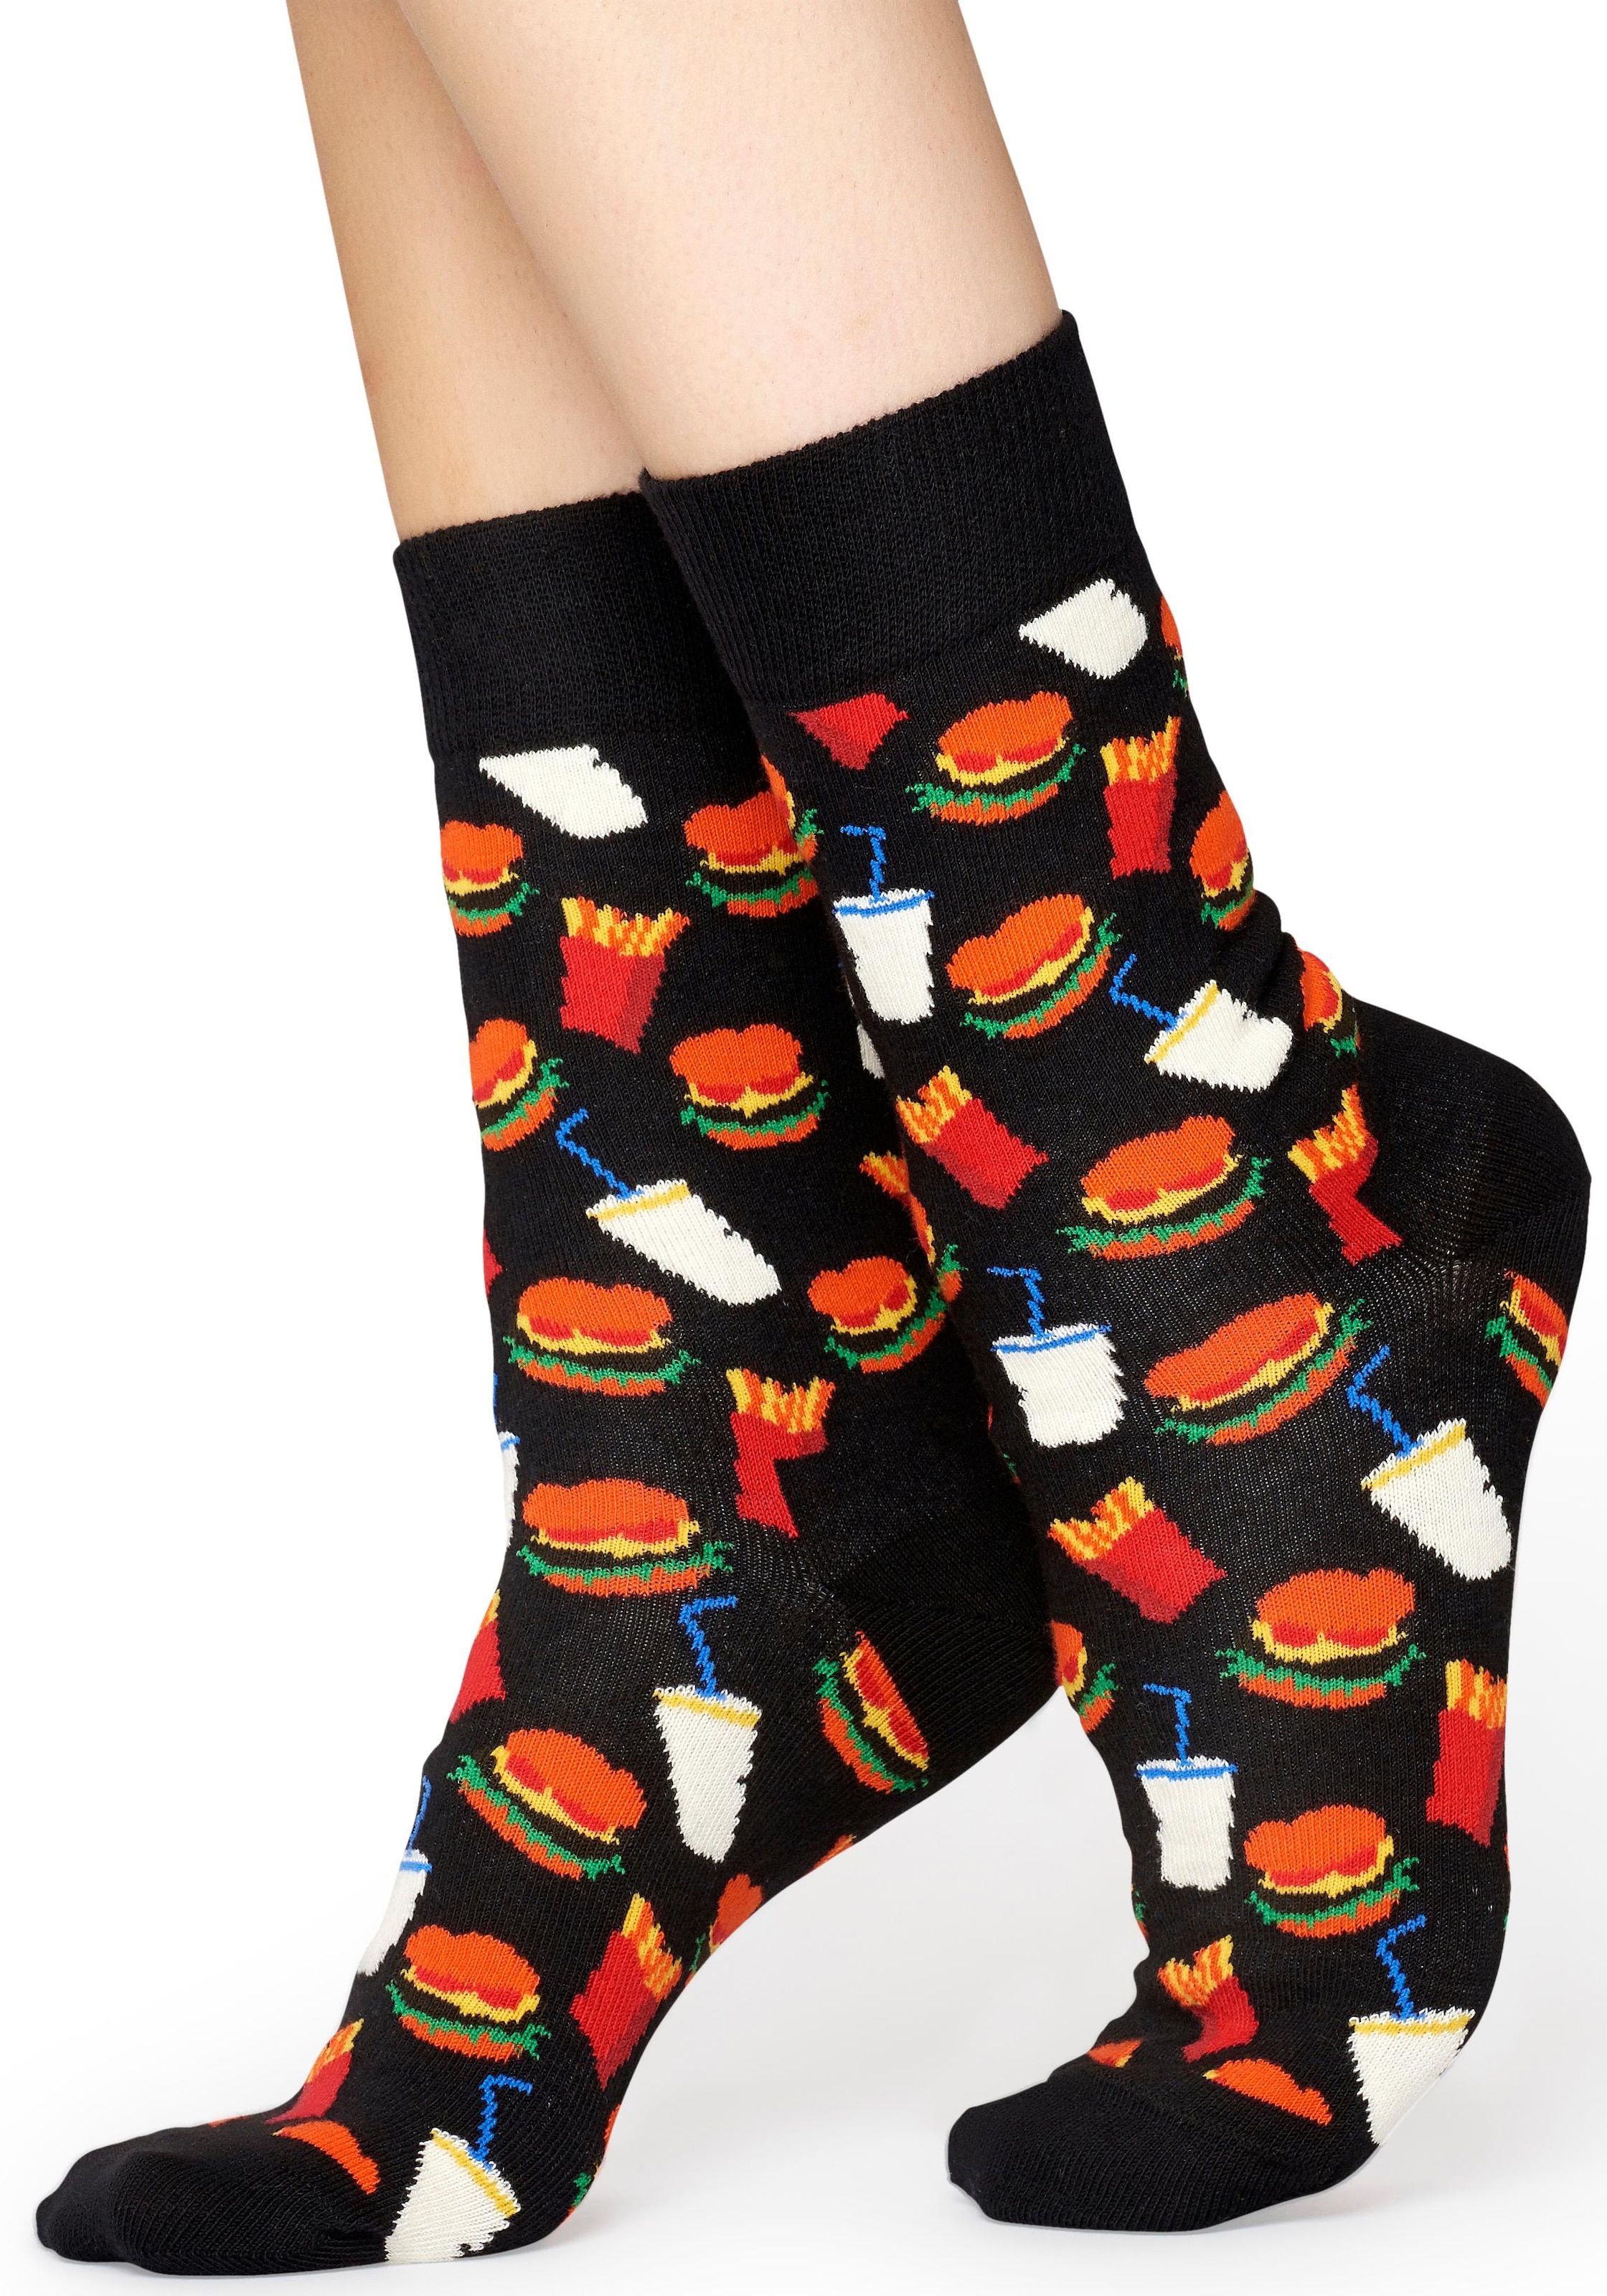 Happy Socks Socken »Burger«, mit Hamburger-Muster günstig kaufen